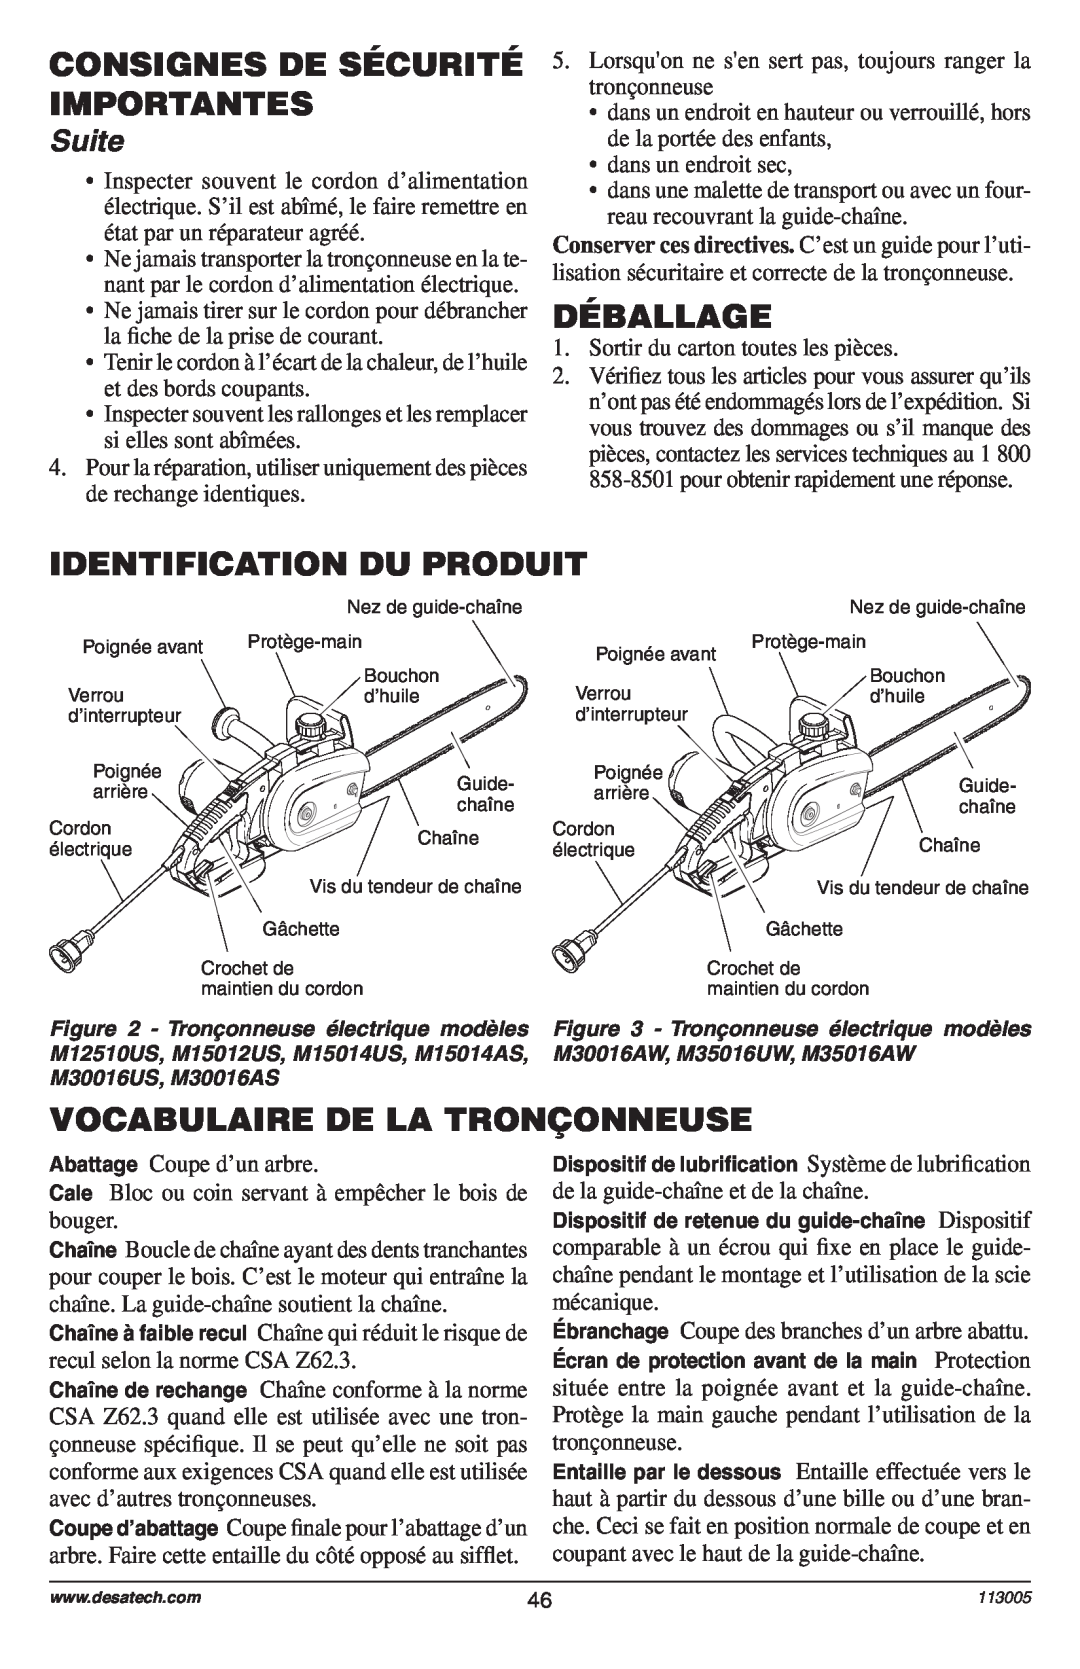 Remington Power Tools Electric Chain Saw Déballage, Identification Du Produit, Vocabulaire De La Tronçonneuse, Suite 